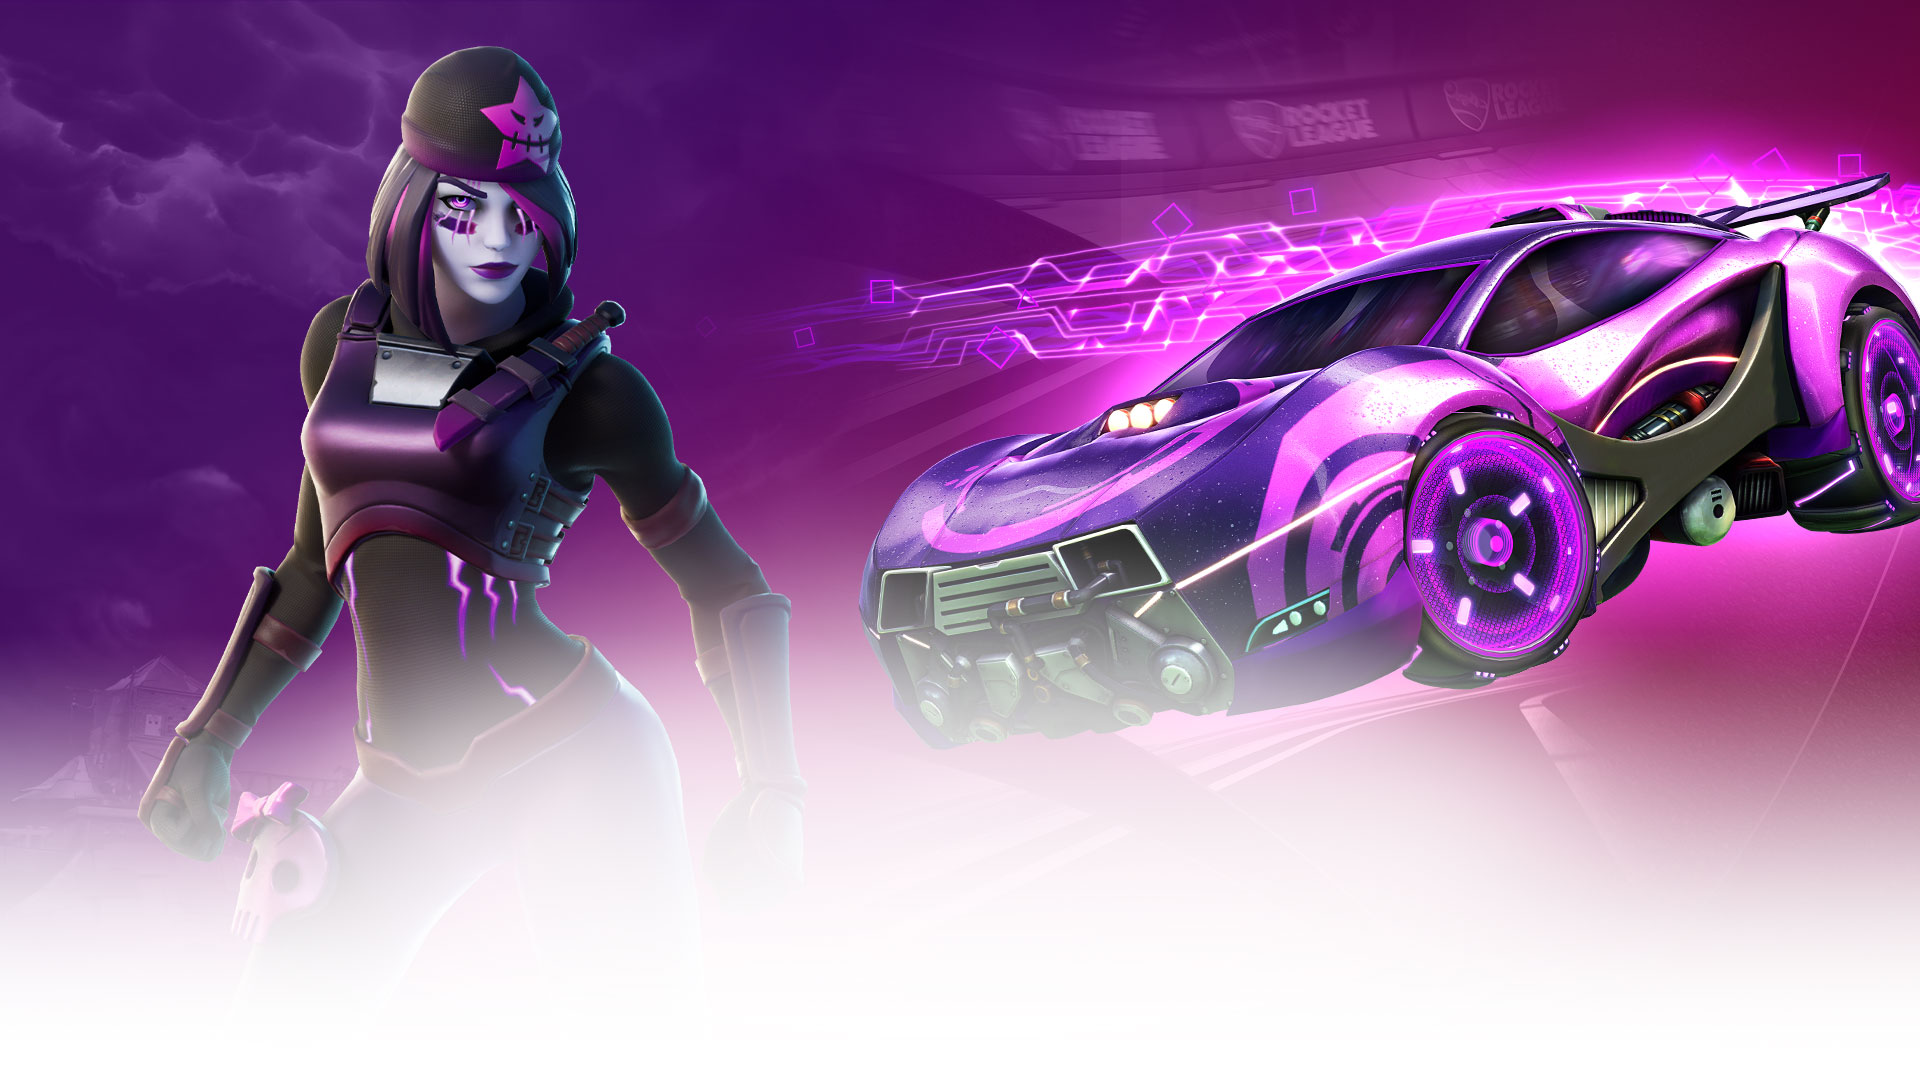 Персонаж Fortnite позирует рядом с автомобилем Rocket League, оба оснащены предметами Midnight Drive Pack.